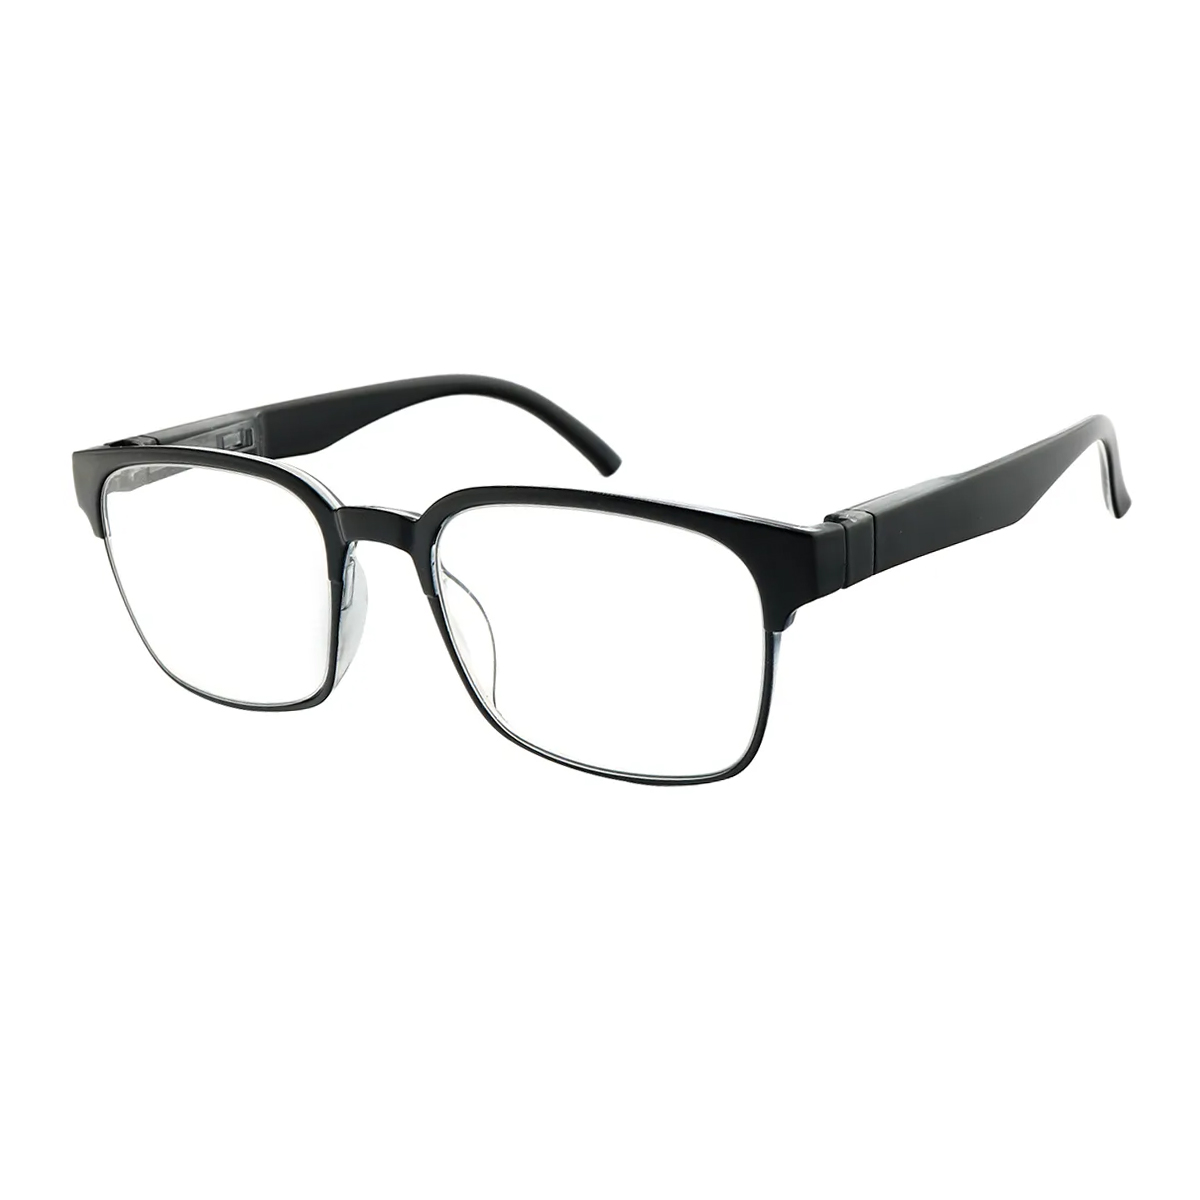 Brewster - Square Black Reading Glasses for Men